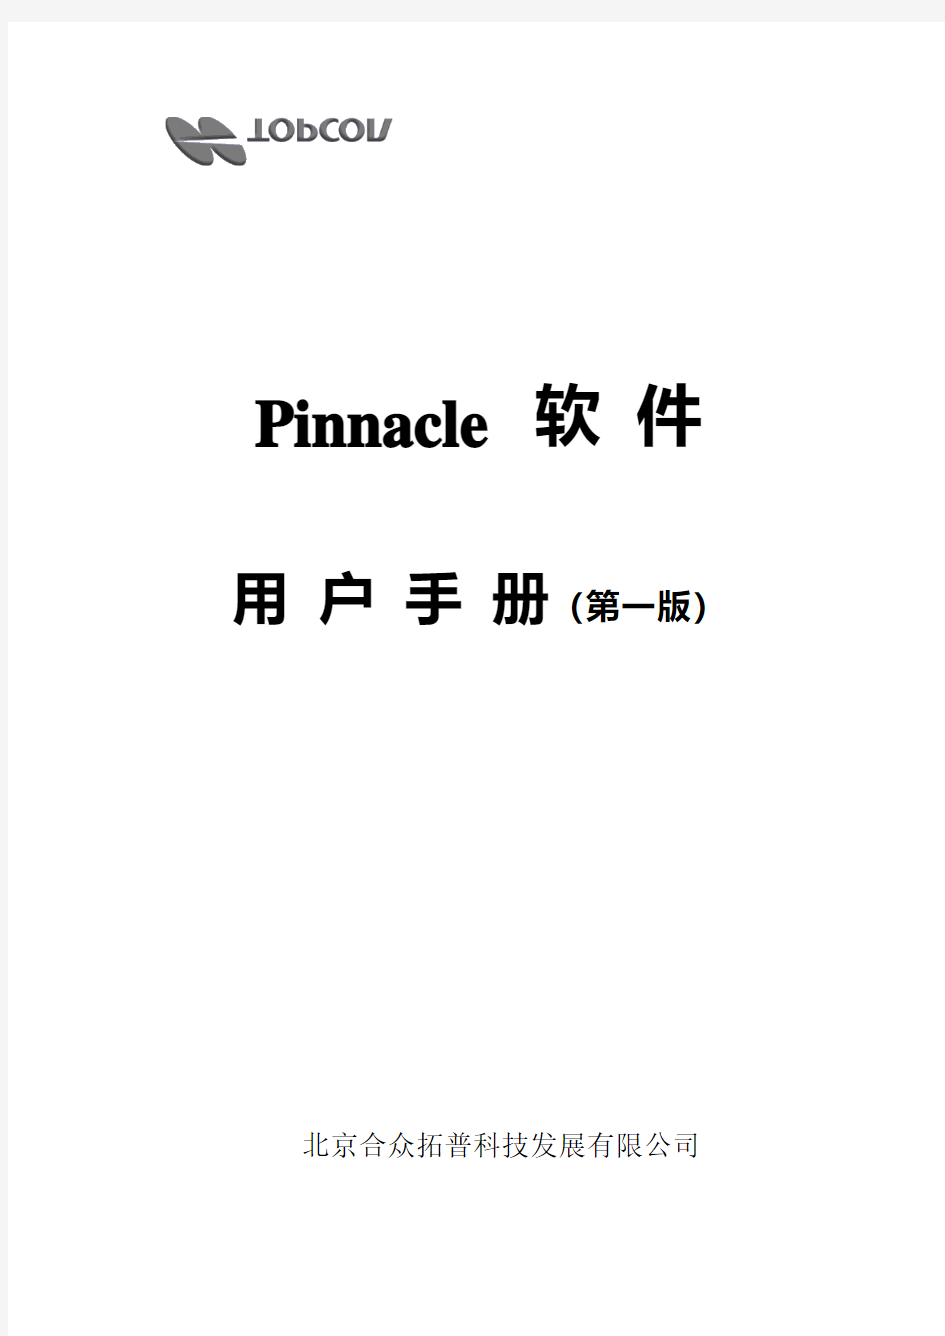 Pinnacle(中文)用户手册